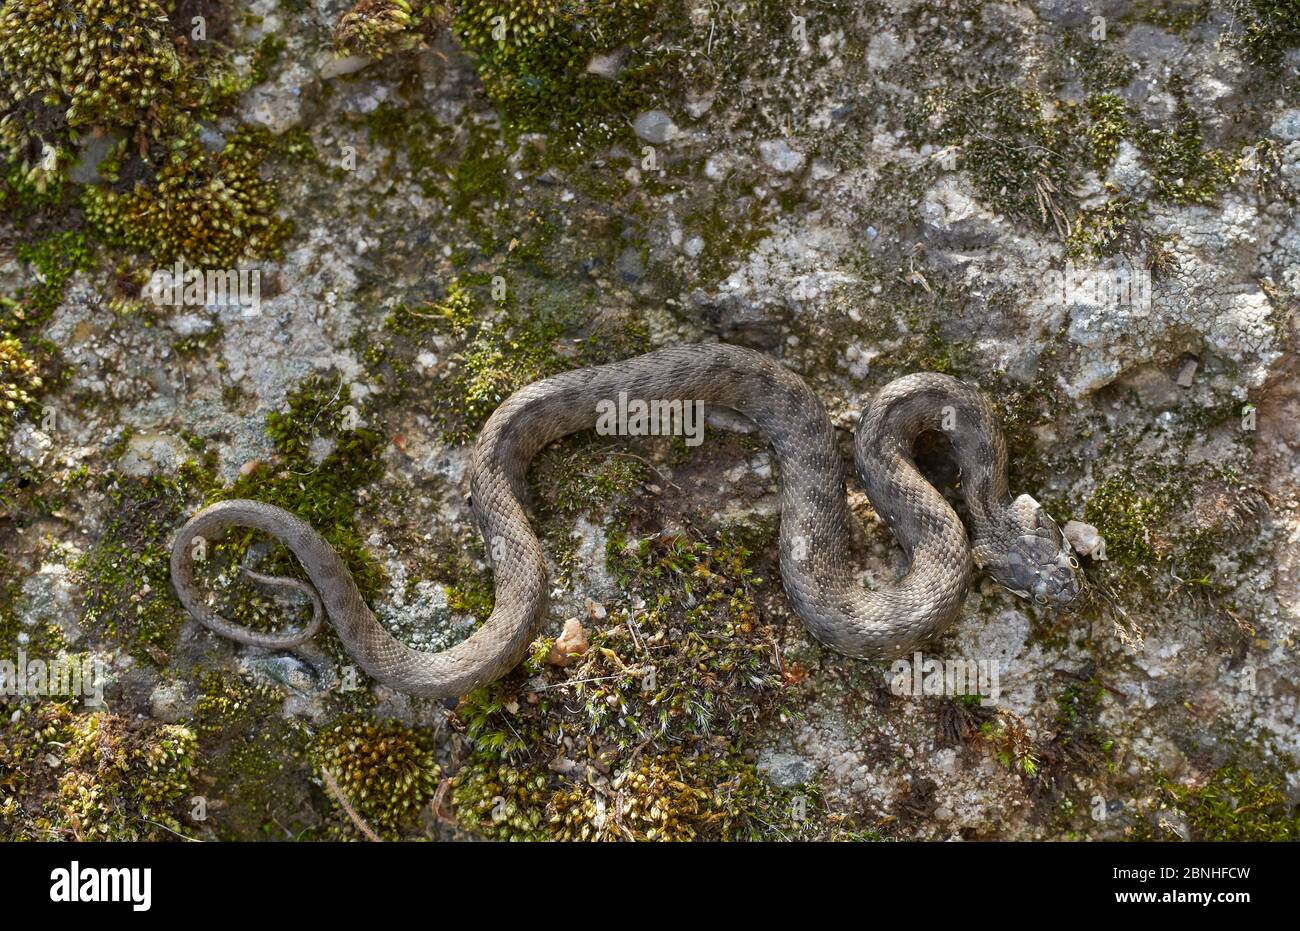 Viperine snake (Natrix maura) a harmless water loving species, Extremadura, Spain Stock Photo